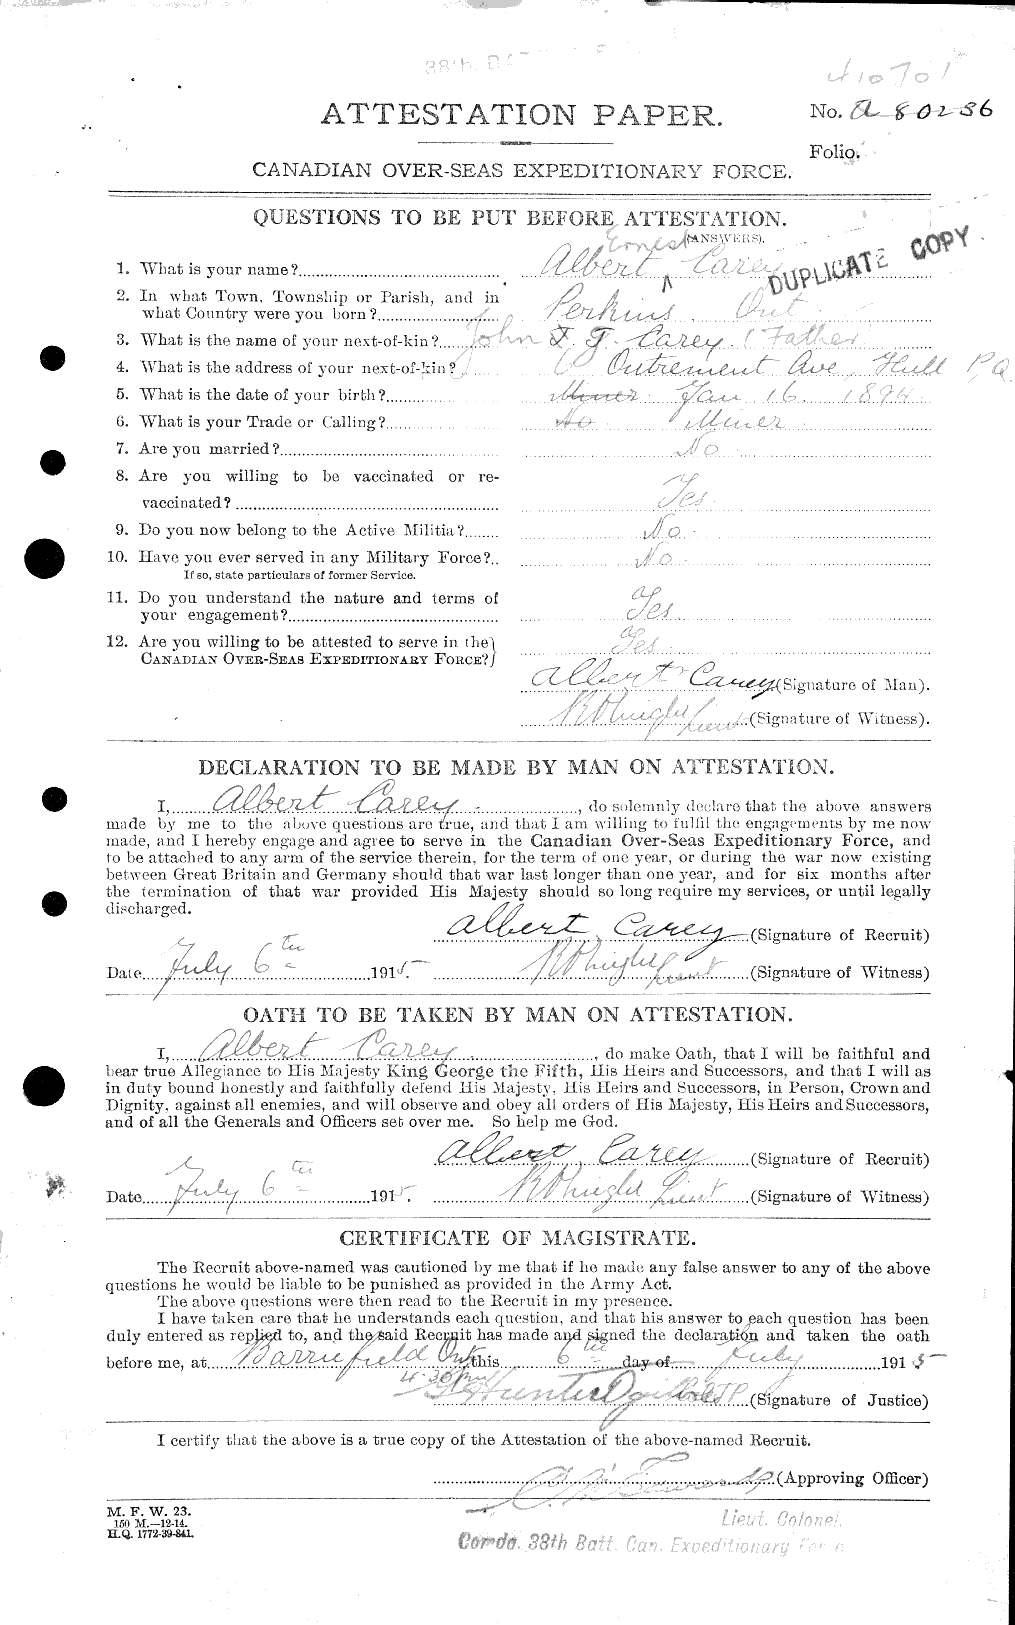 Dossiers du Personnel de la Première Guerre mondiale - CEC 009349a